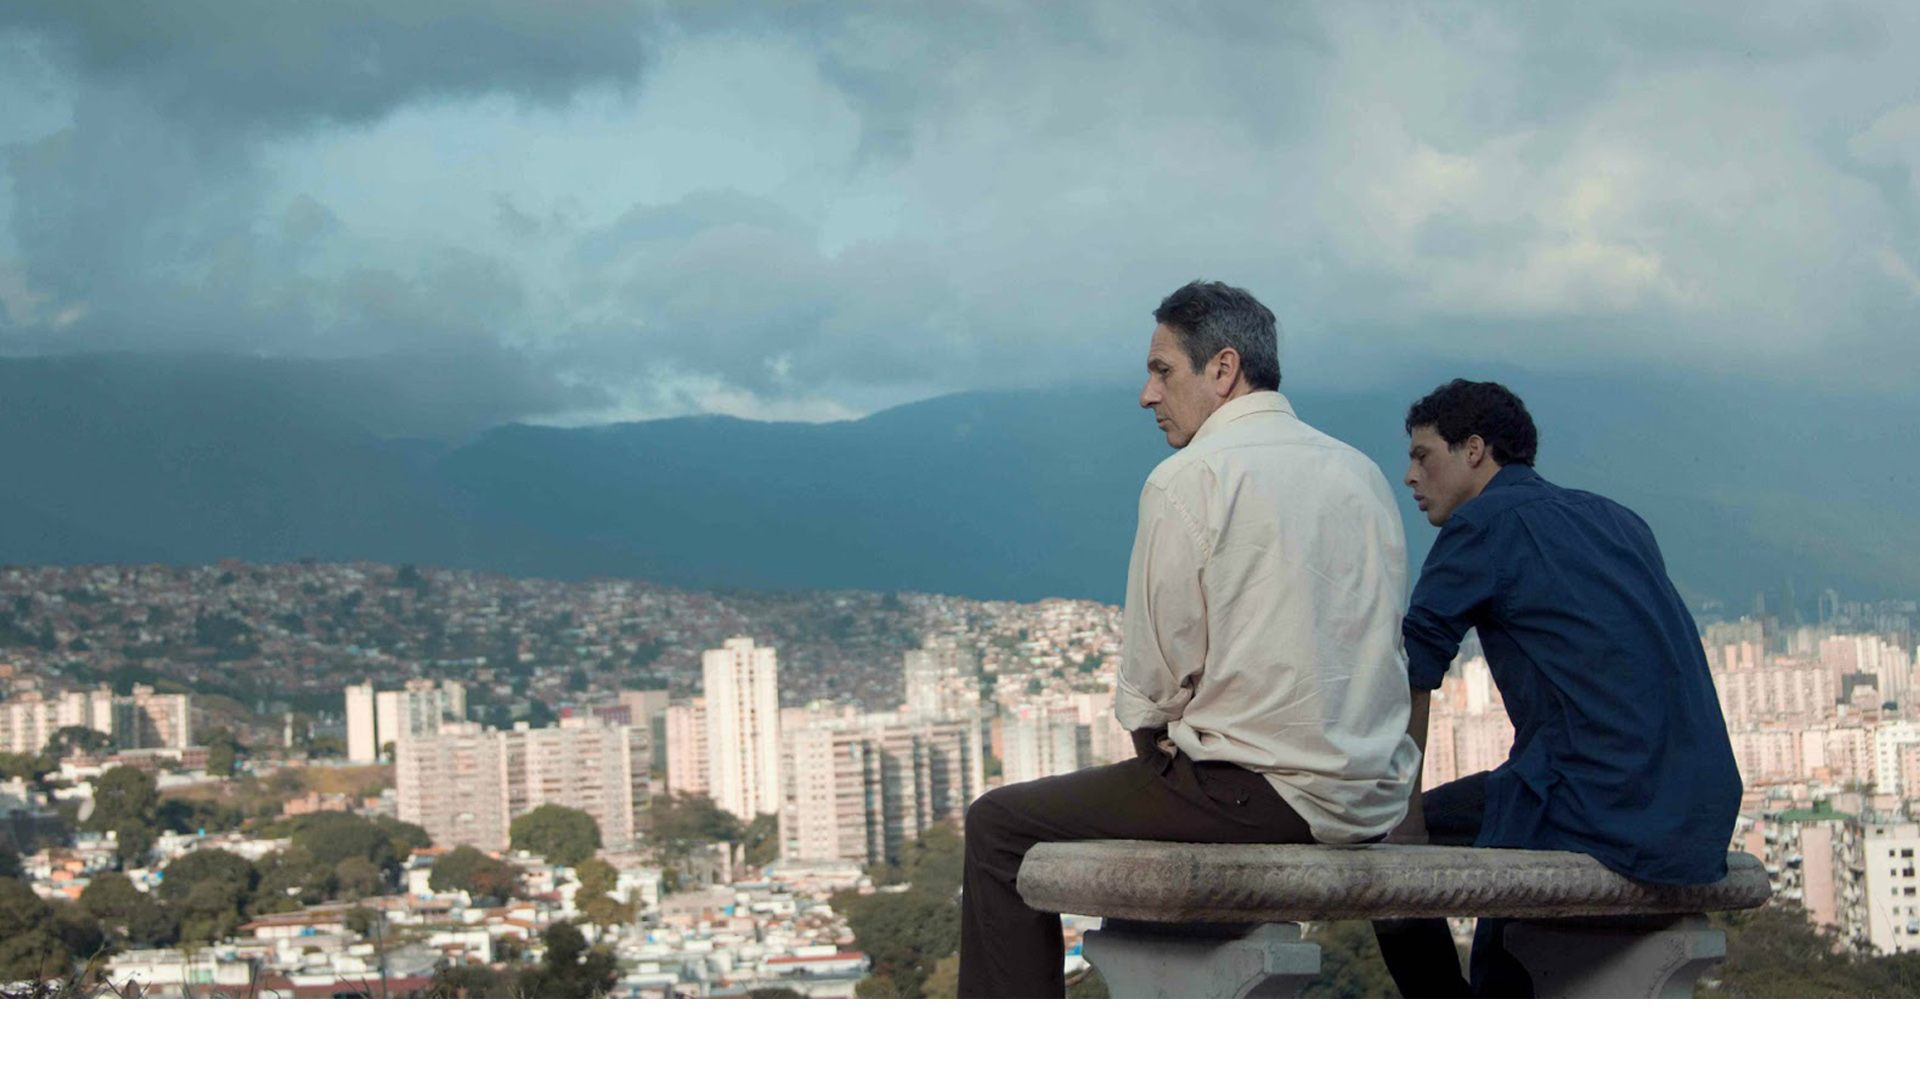 La compañía Happines Distribution precisó el estreno de la cinta en 30 salas bajo el título “Les amants de Caracas”